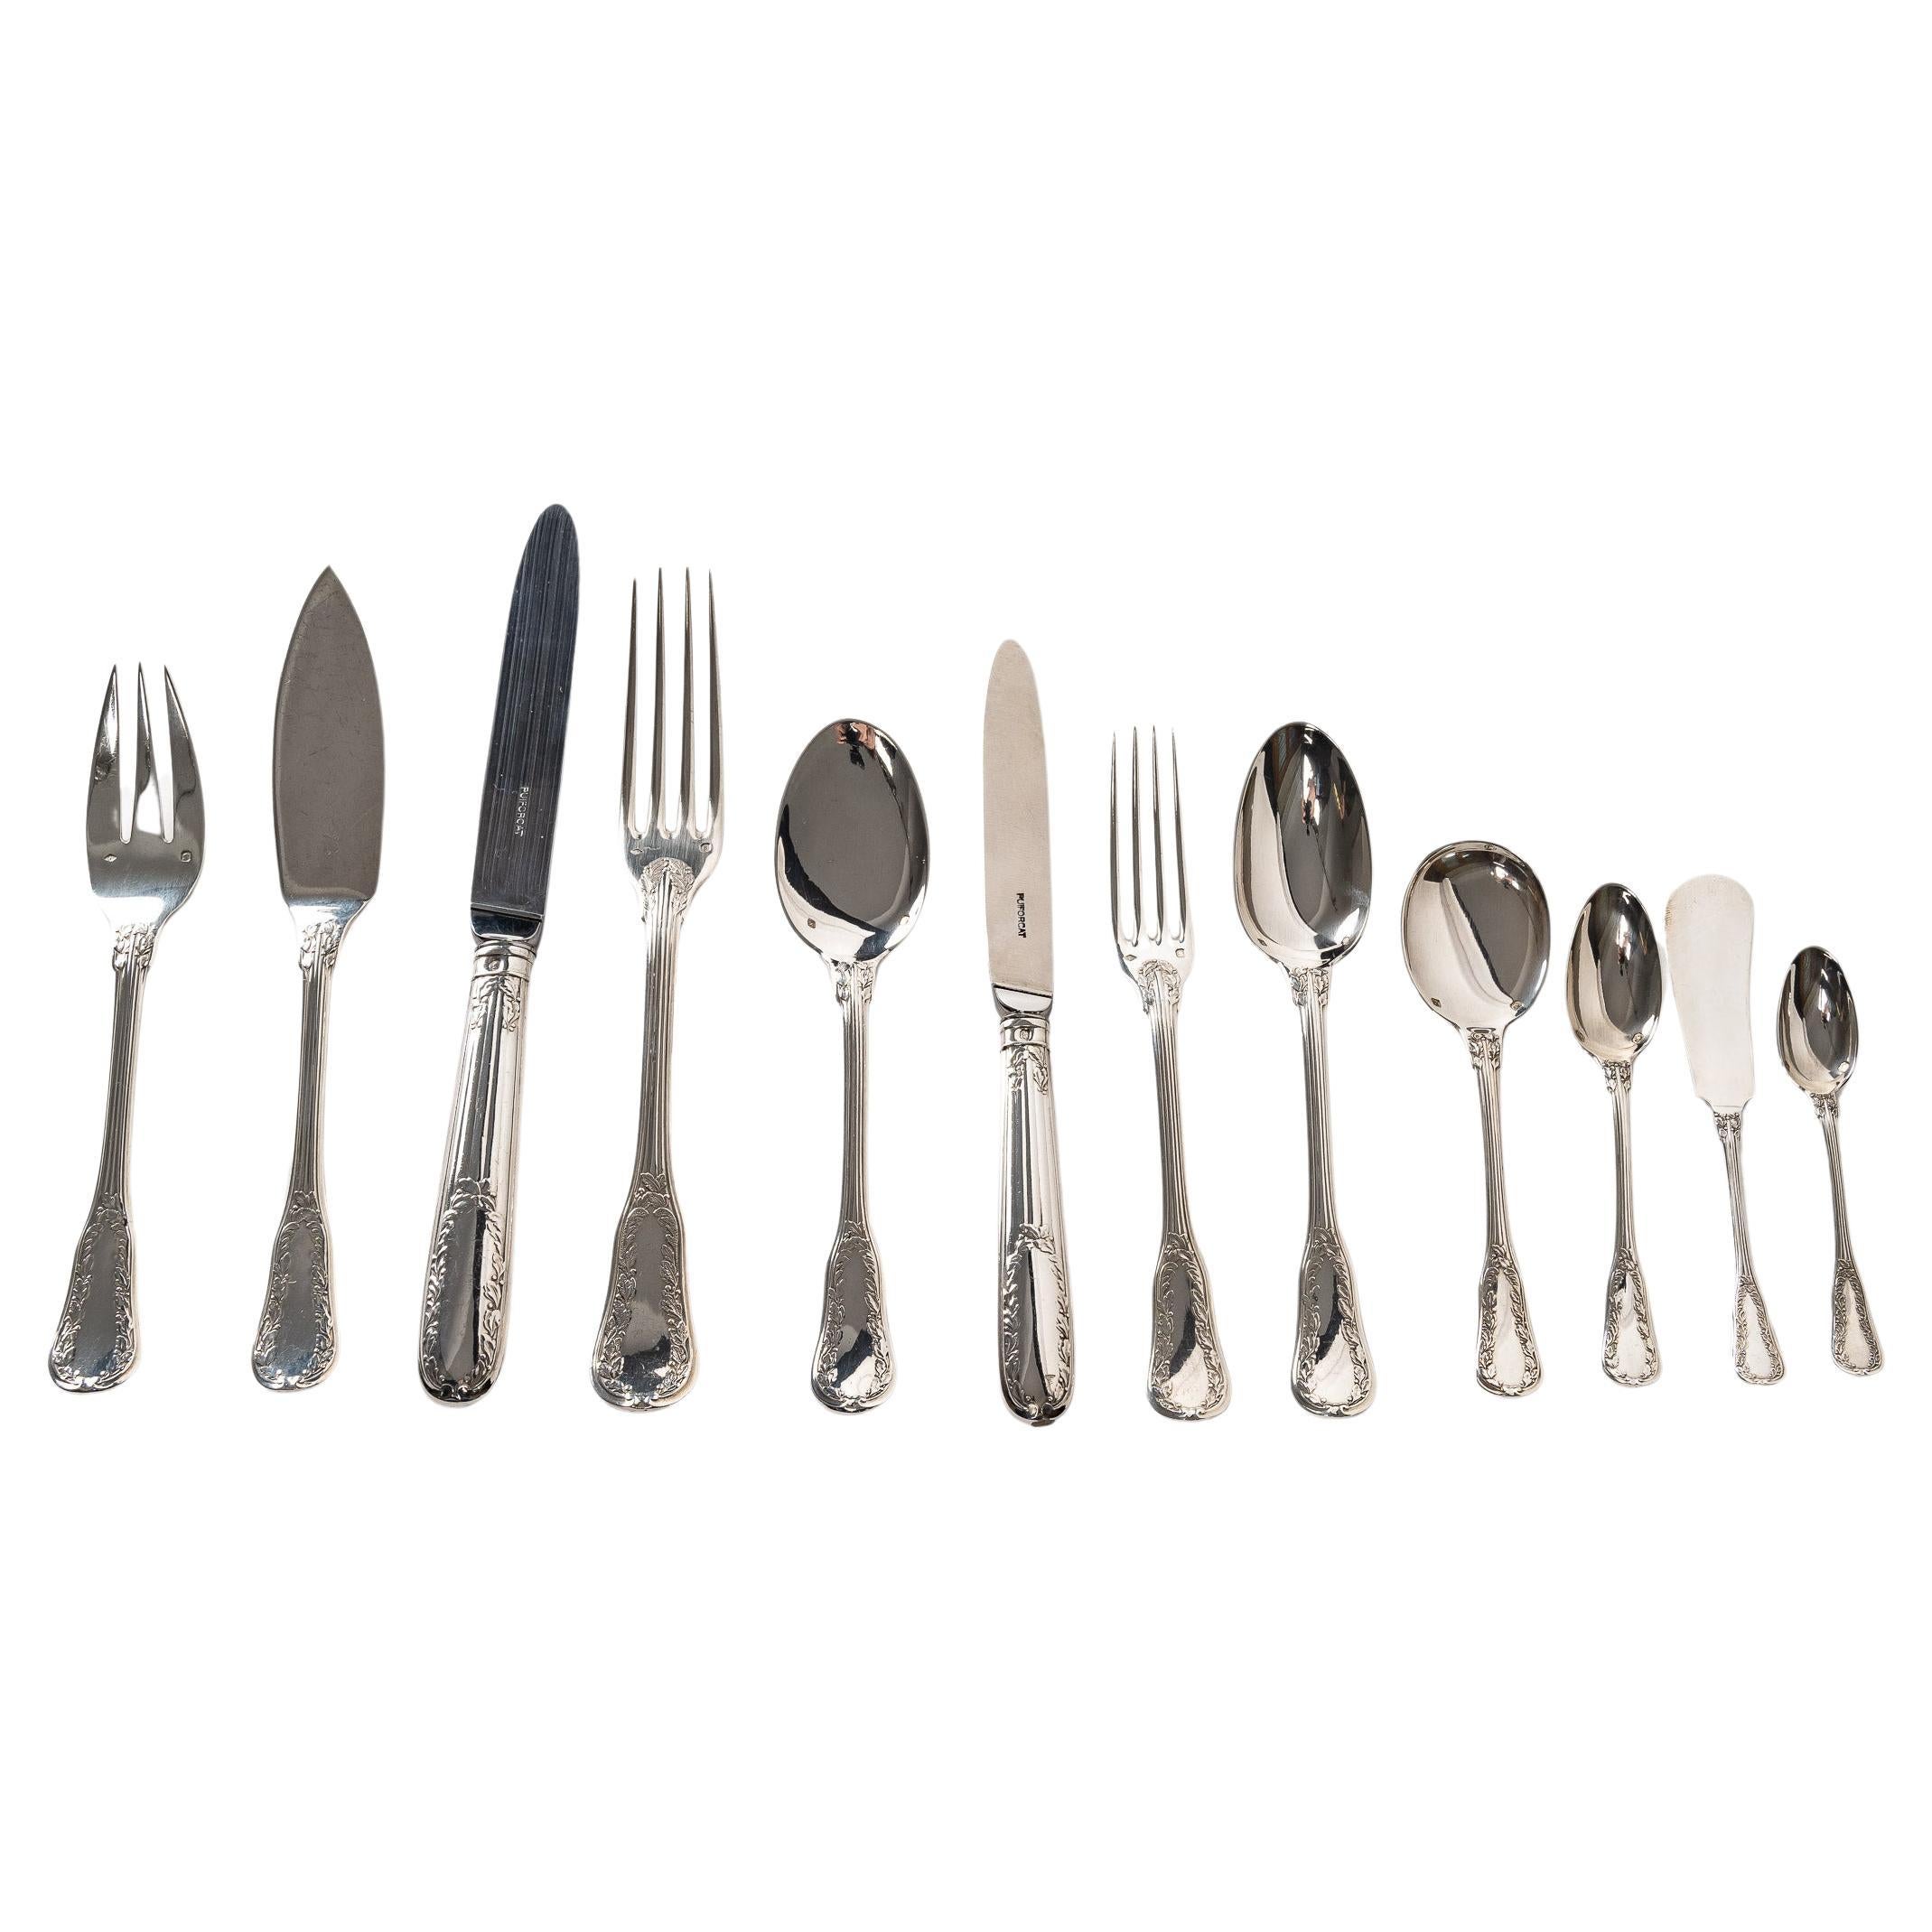 Puiforcat - twentieth silver cutlery set 153 pieces "ségur" model unencrypted. For Sale